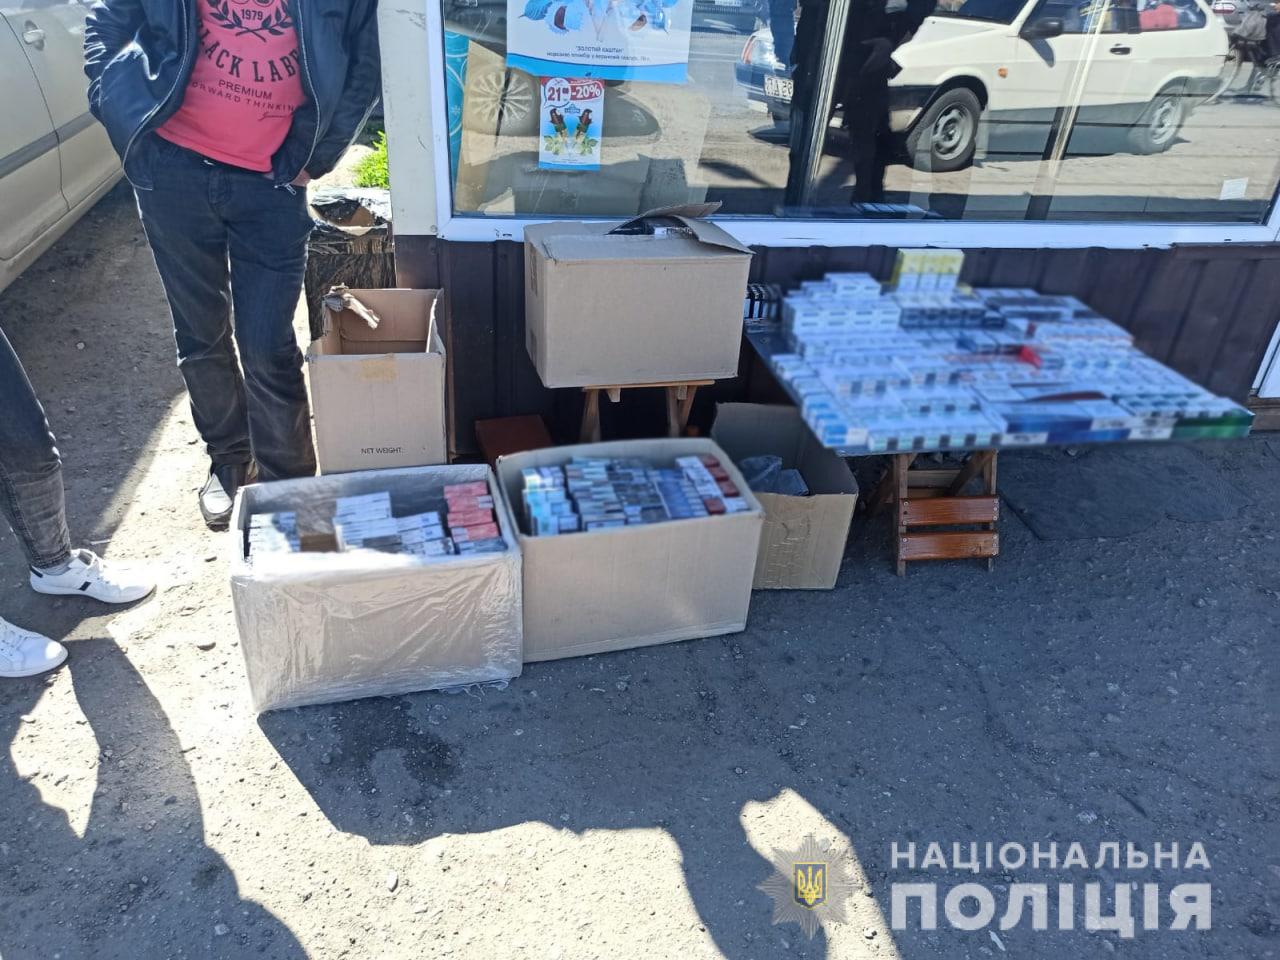 Криминал Харьковщина: Поймали на горячем незаконного дельца в центре Тарановки